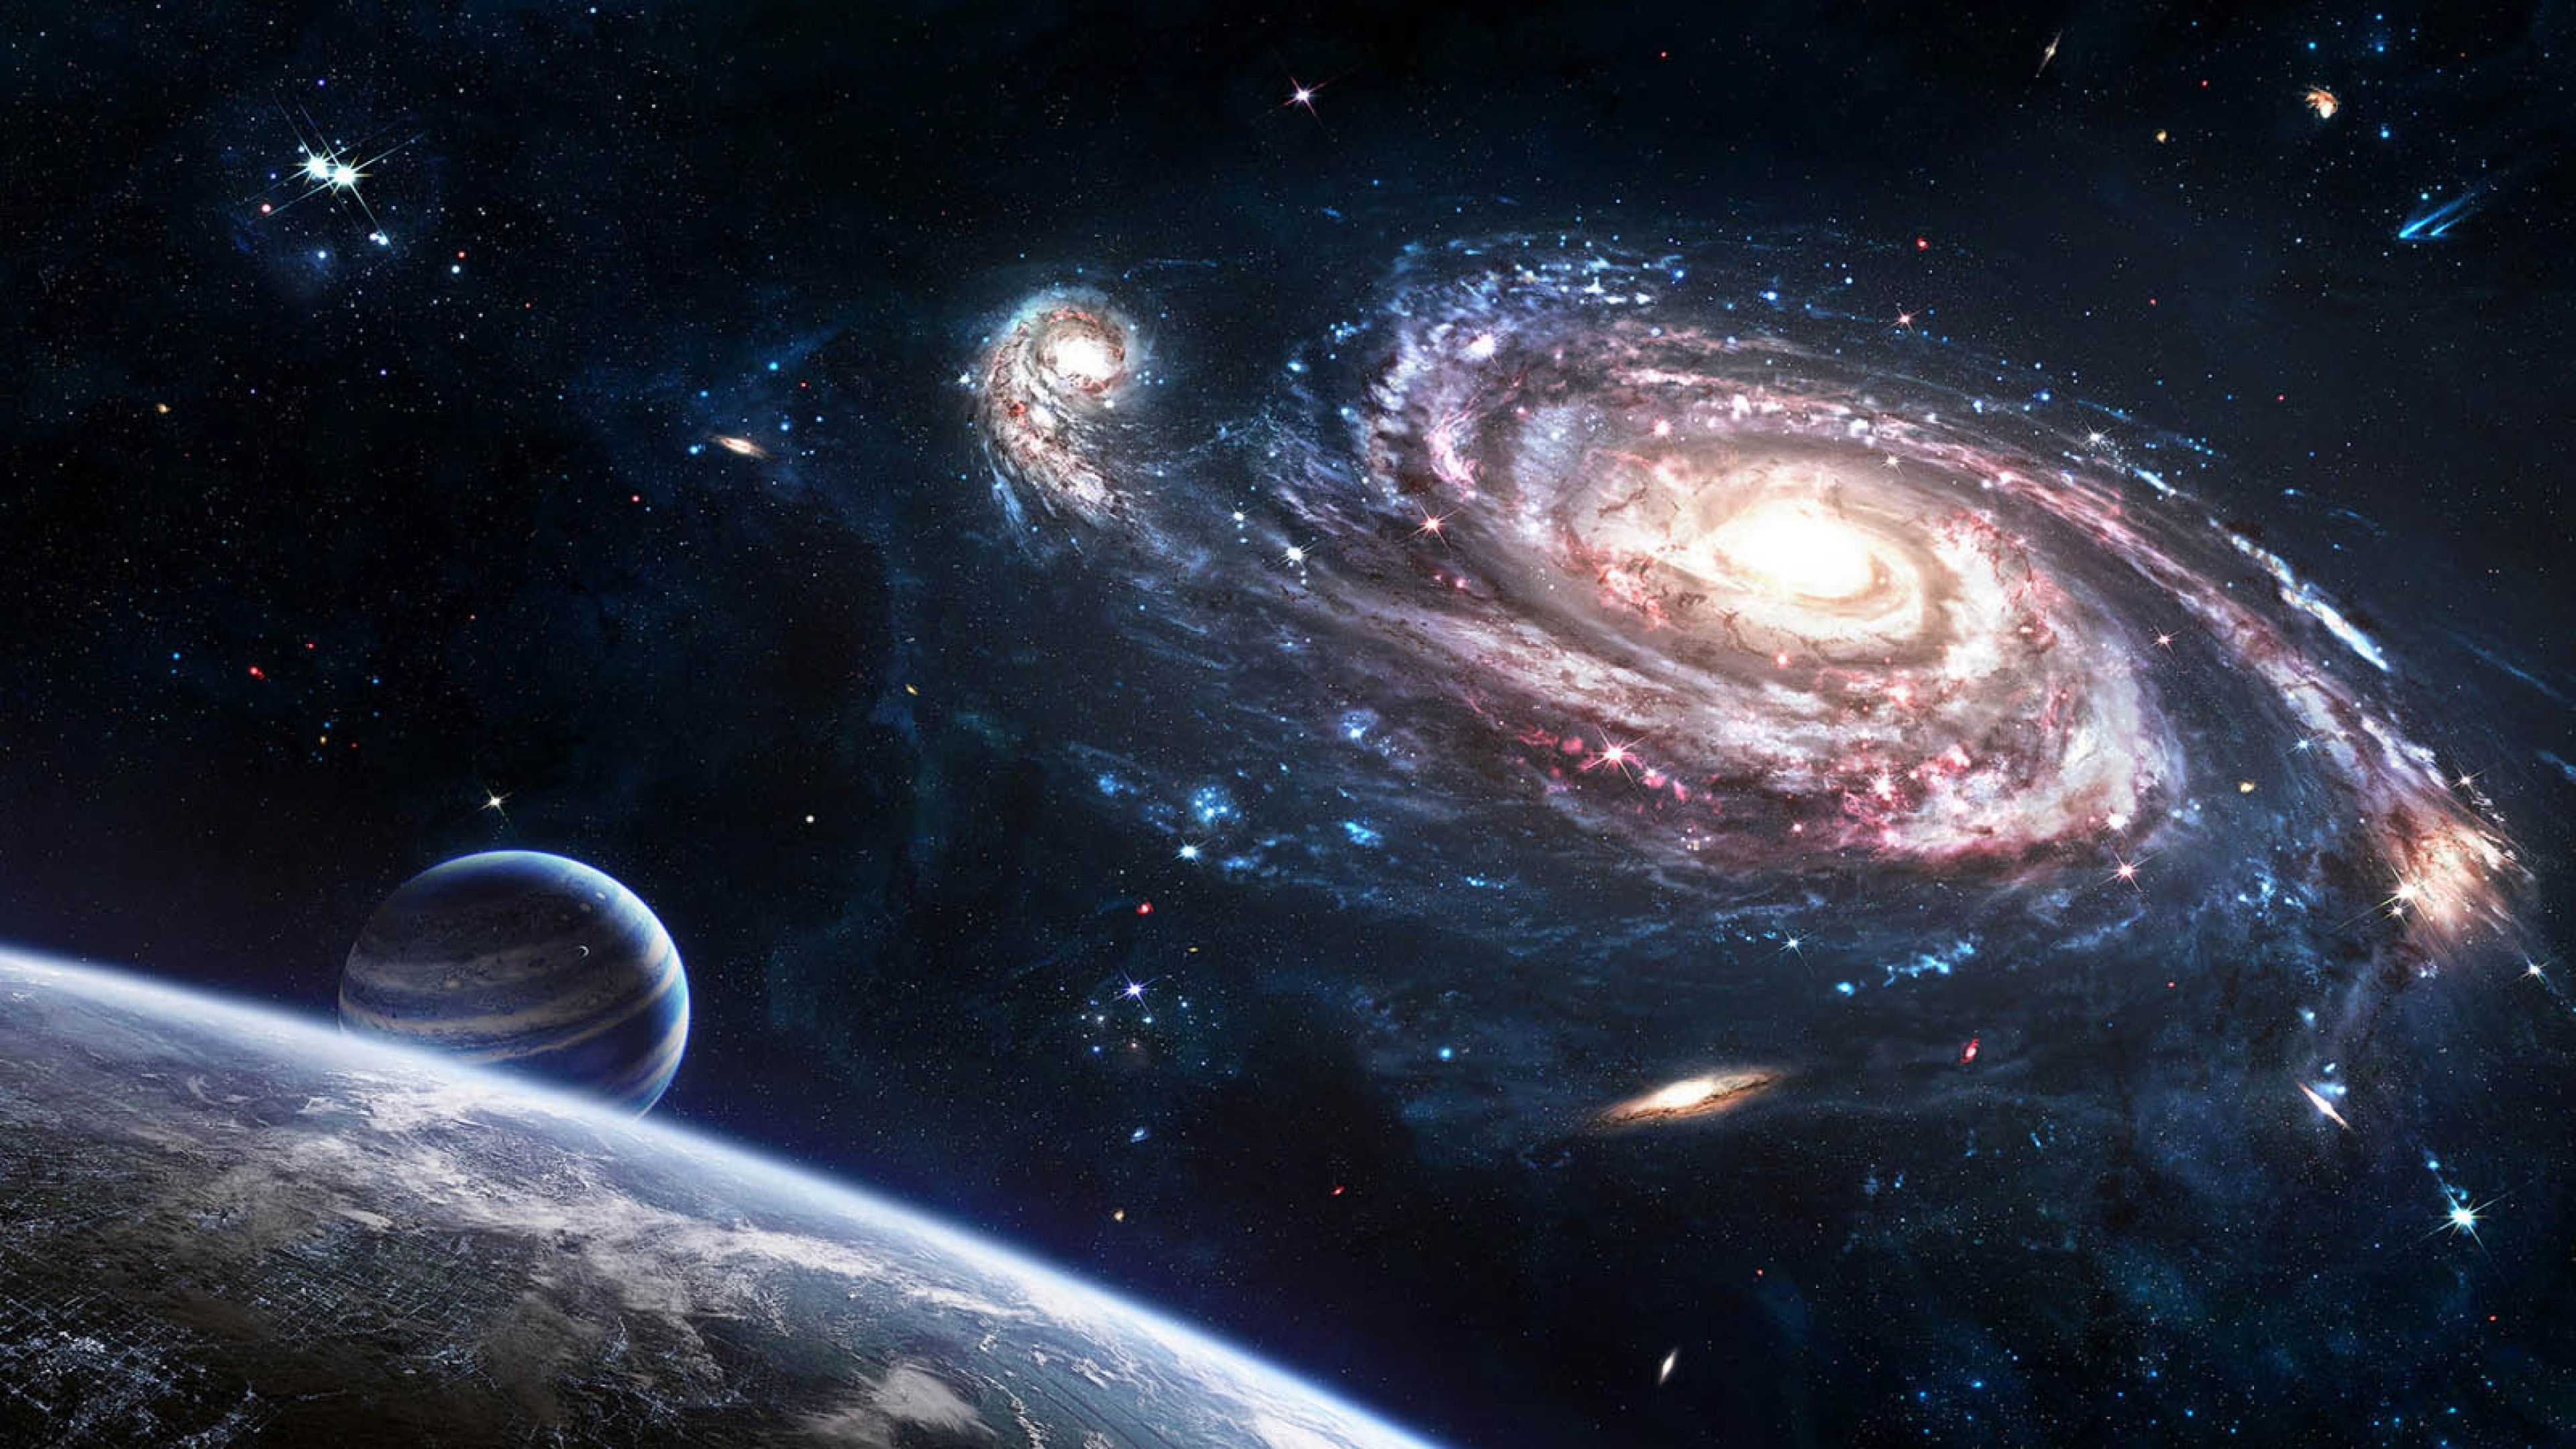 Hình nền vũ trụ: Mời bạn tới thế giới vô tận của sao trời và hành tinh với hình nền vũ trụ. Màu sắc kỳ ảo và chất lượng hình ảnh tuyệt vời sẽ khiến bạn ngạc nhiên và thích thú. Hãy cảm nhận từng chi tiết nhỏ trên màn hình máy tính của bạn như là những hành tinh xa xôi cách trái đất hàng triệu km.